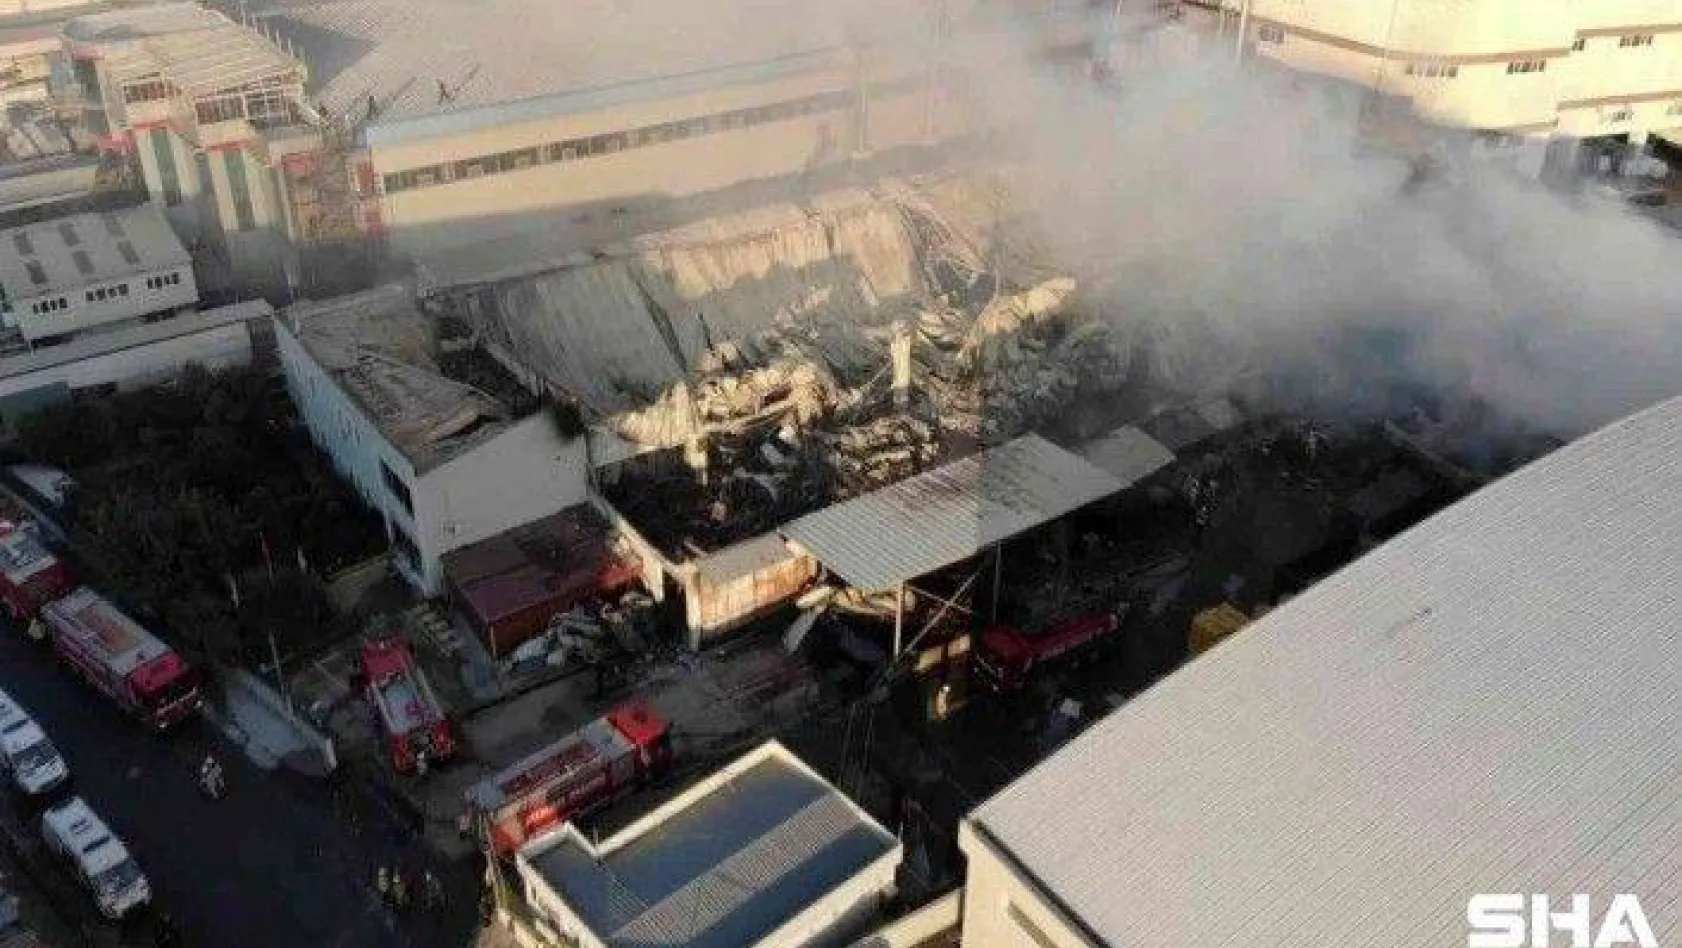 Esenyurt'ta 1 kişinin öldüğü fabrika yangınının boyutu gün ağarınca ortaya çıktı